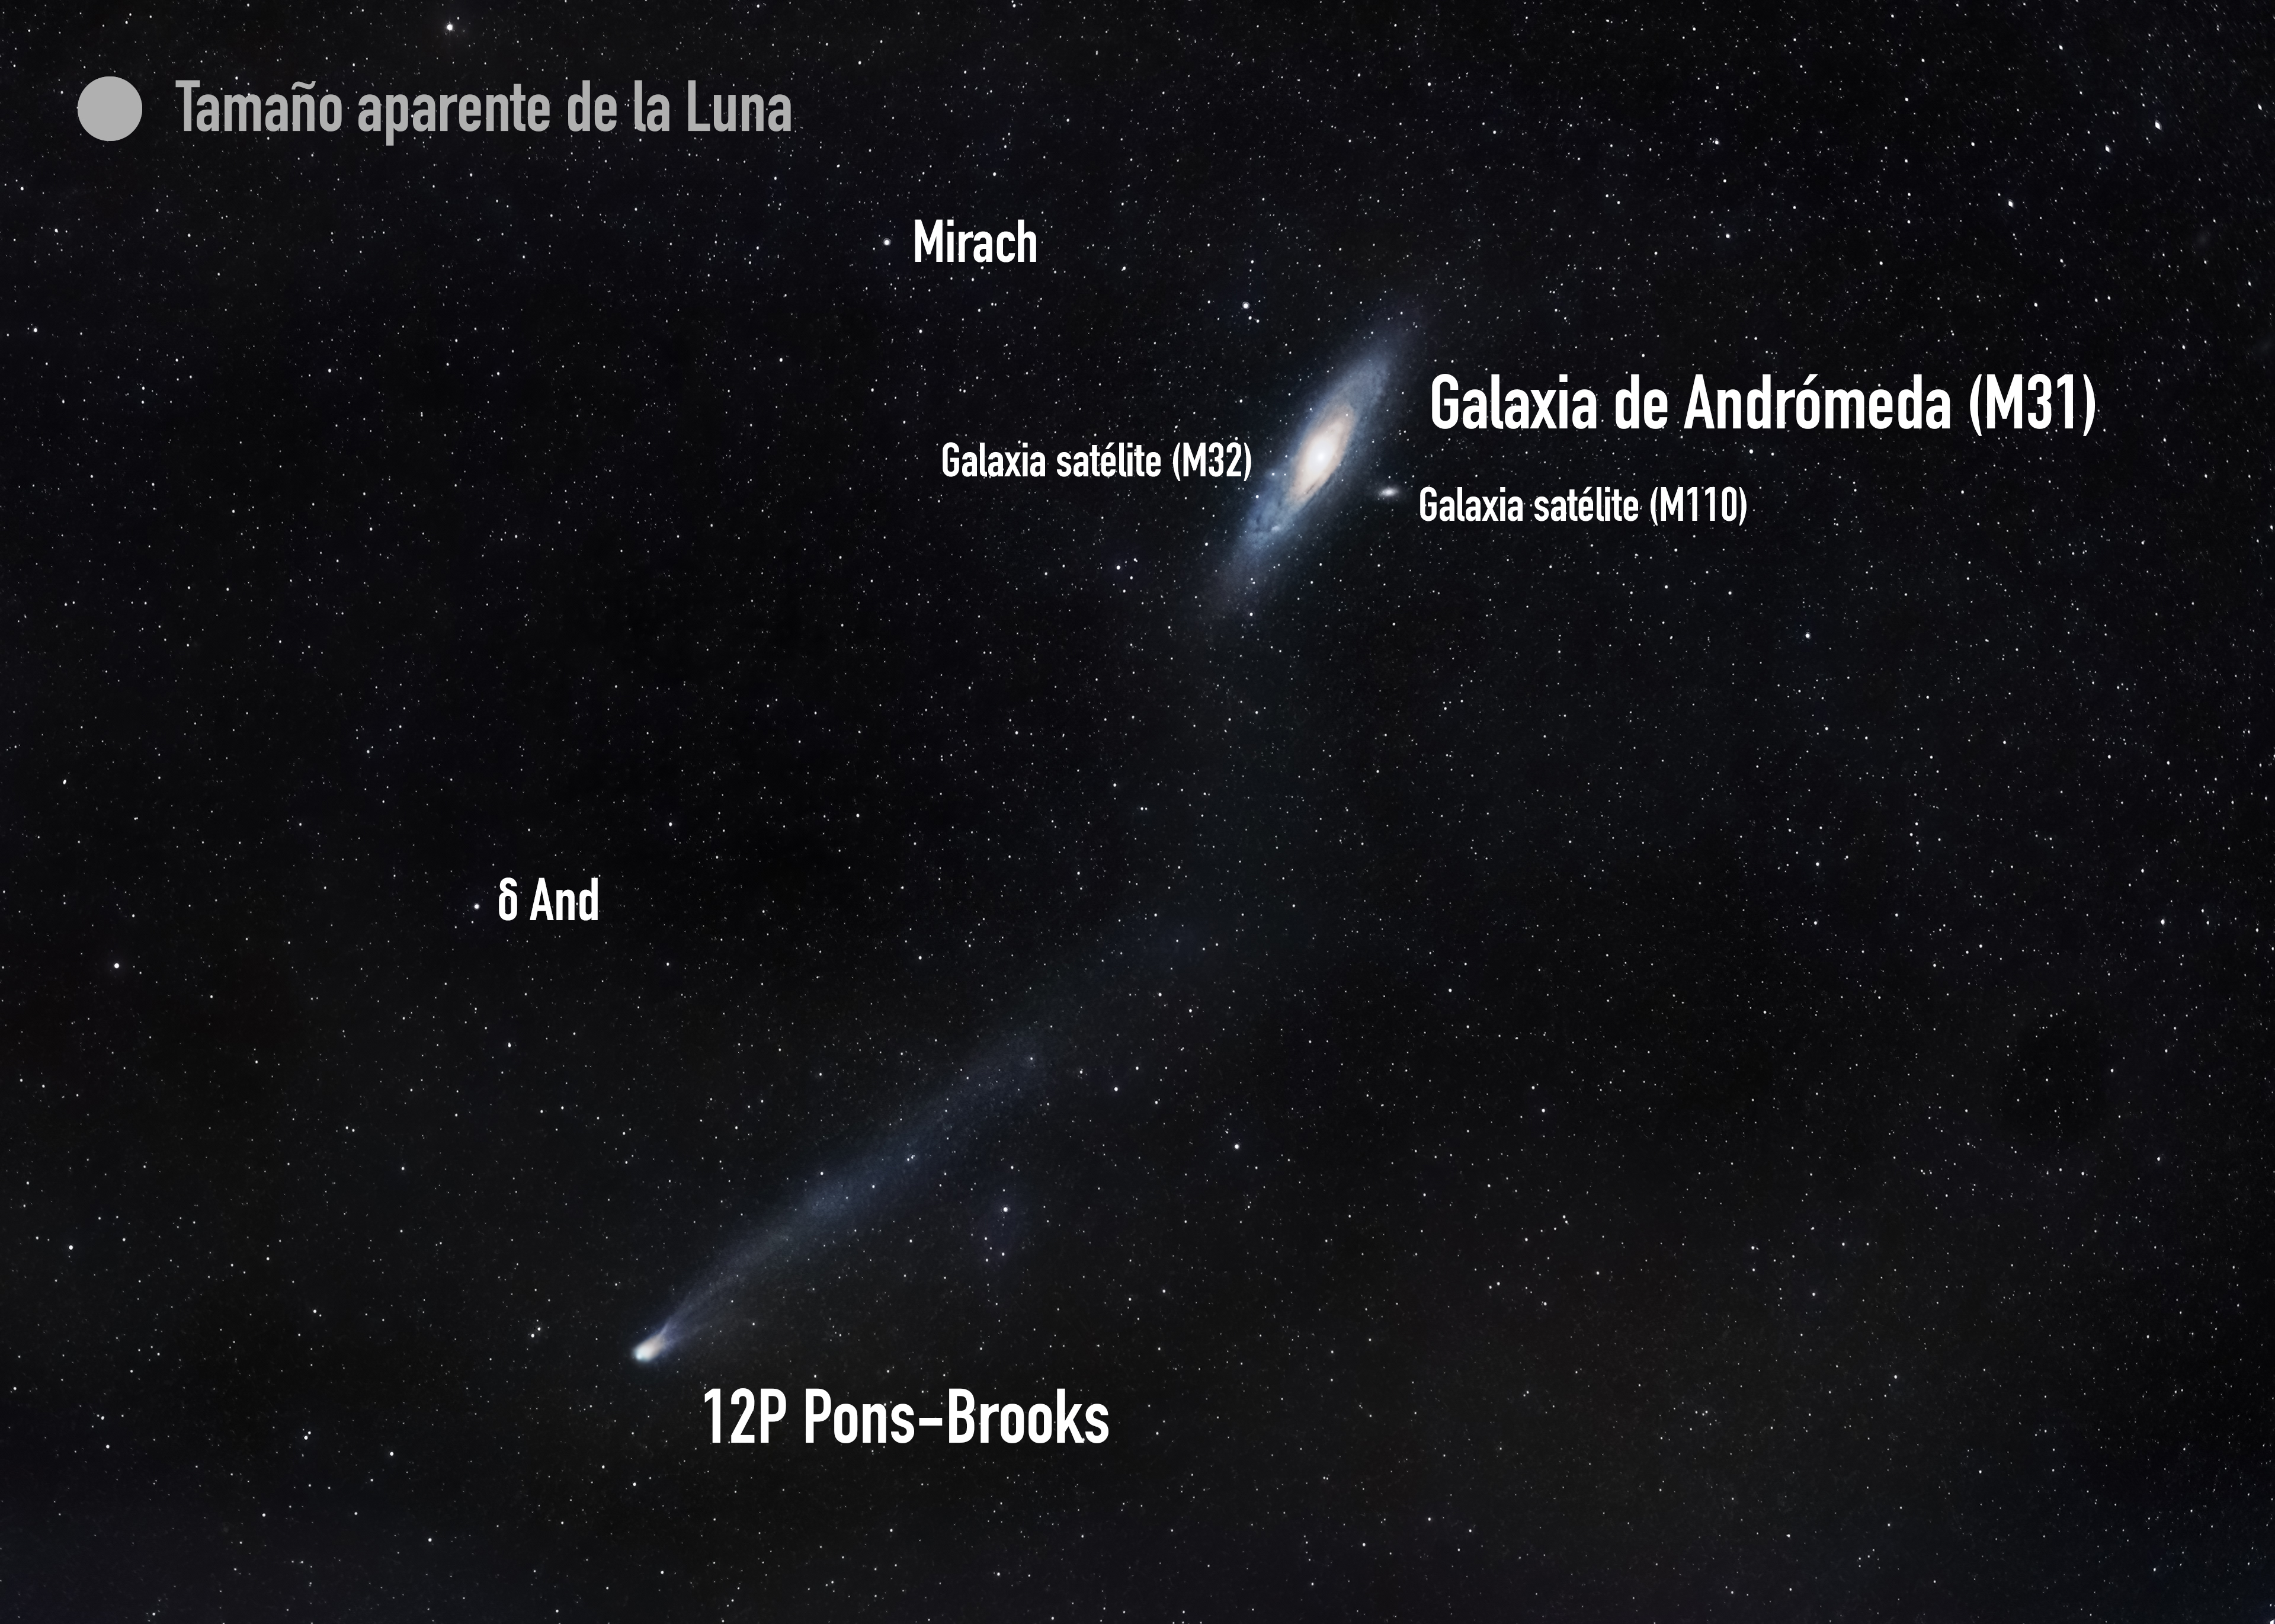 Tras la puesta de Sol del viernes 8 de marzo, el cometa 12P Pons-Brooks pasa cerca de nuestra vecina, la Galaxia de Andrómeda (M31). Puede apreciarse su larga cola, de más de 5 grados de longitud (el equivalente a más de 10 Lunas en fila). El cometa se encuentra a poco menos de 250 millones de km de nosotros (1 U.A. son 150 millones de km). Imagen obtenida con cámara réflex y objetivo de 85mm a f/1.6 ISO 2500 y suma de 120 exposiciones de 5 s con seguimiento estelar. (Crédito: Daniel López / IAC).